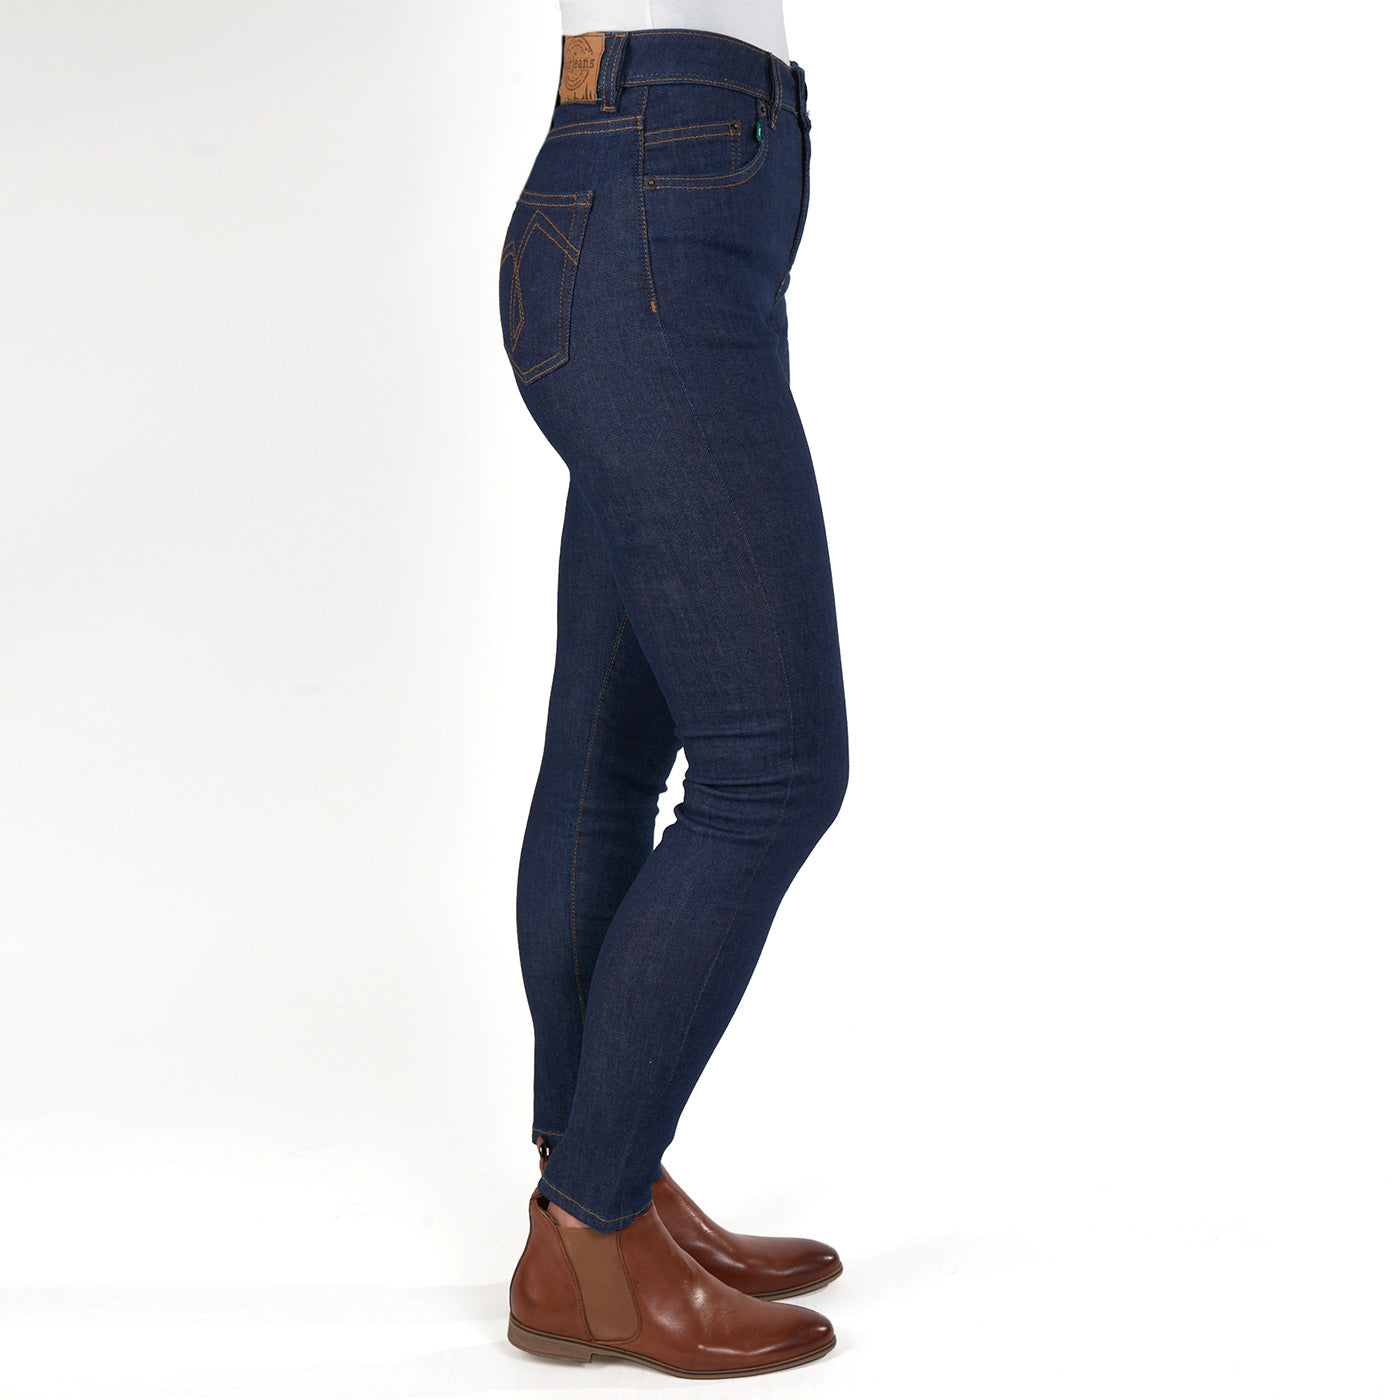 Fit fairjeans Skinny Bio Jeans aus Damen – | Bio-Baumwolle. Jeans Kleidung Faire